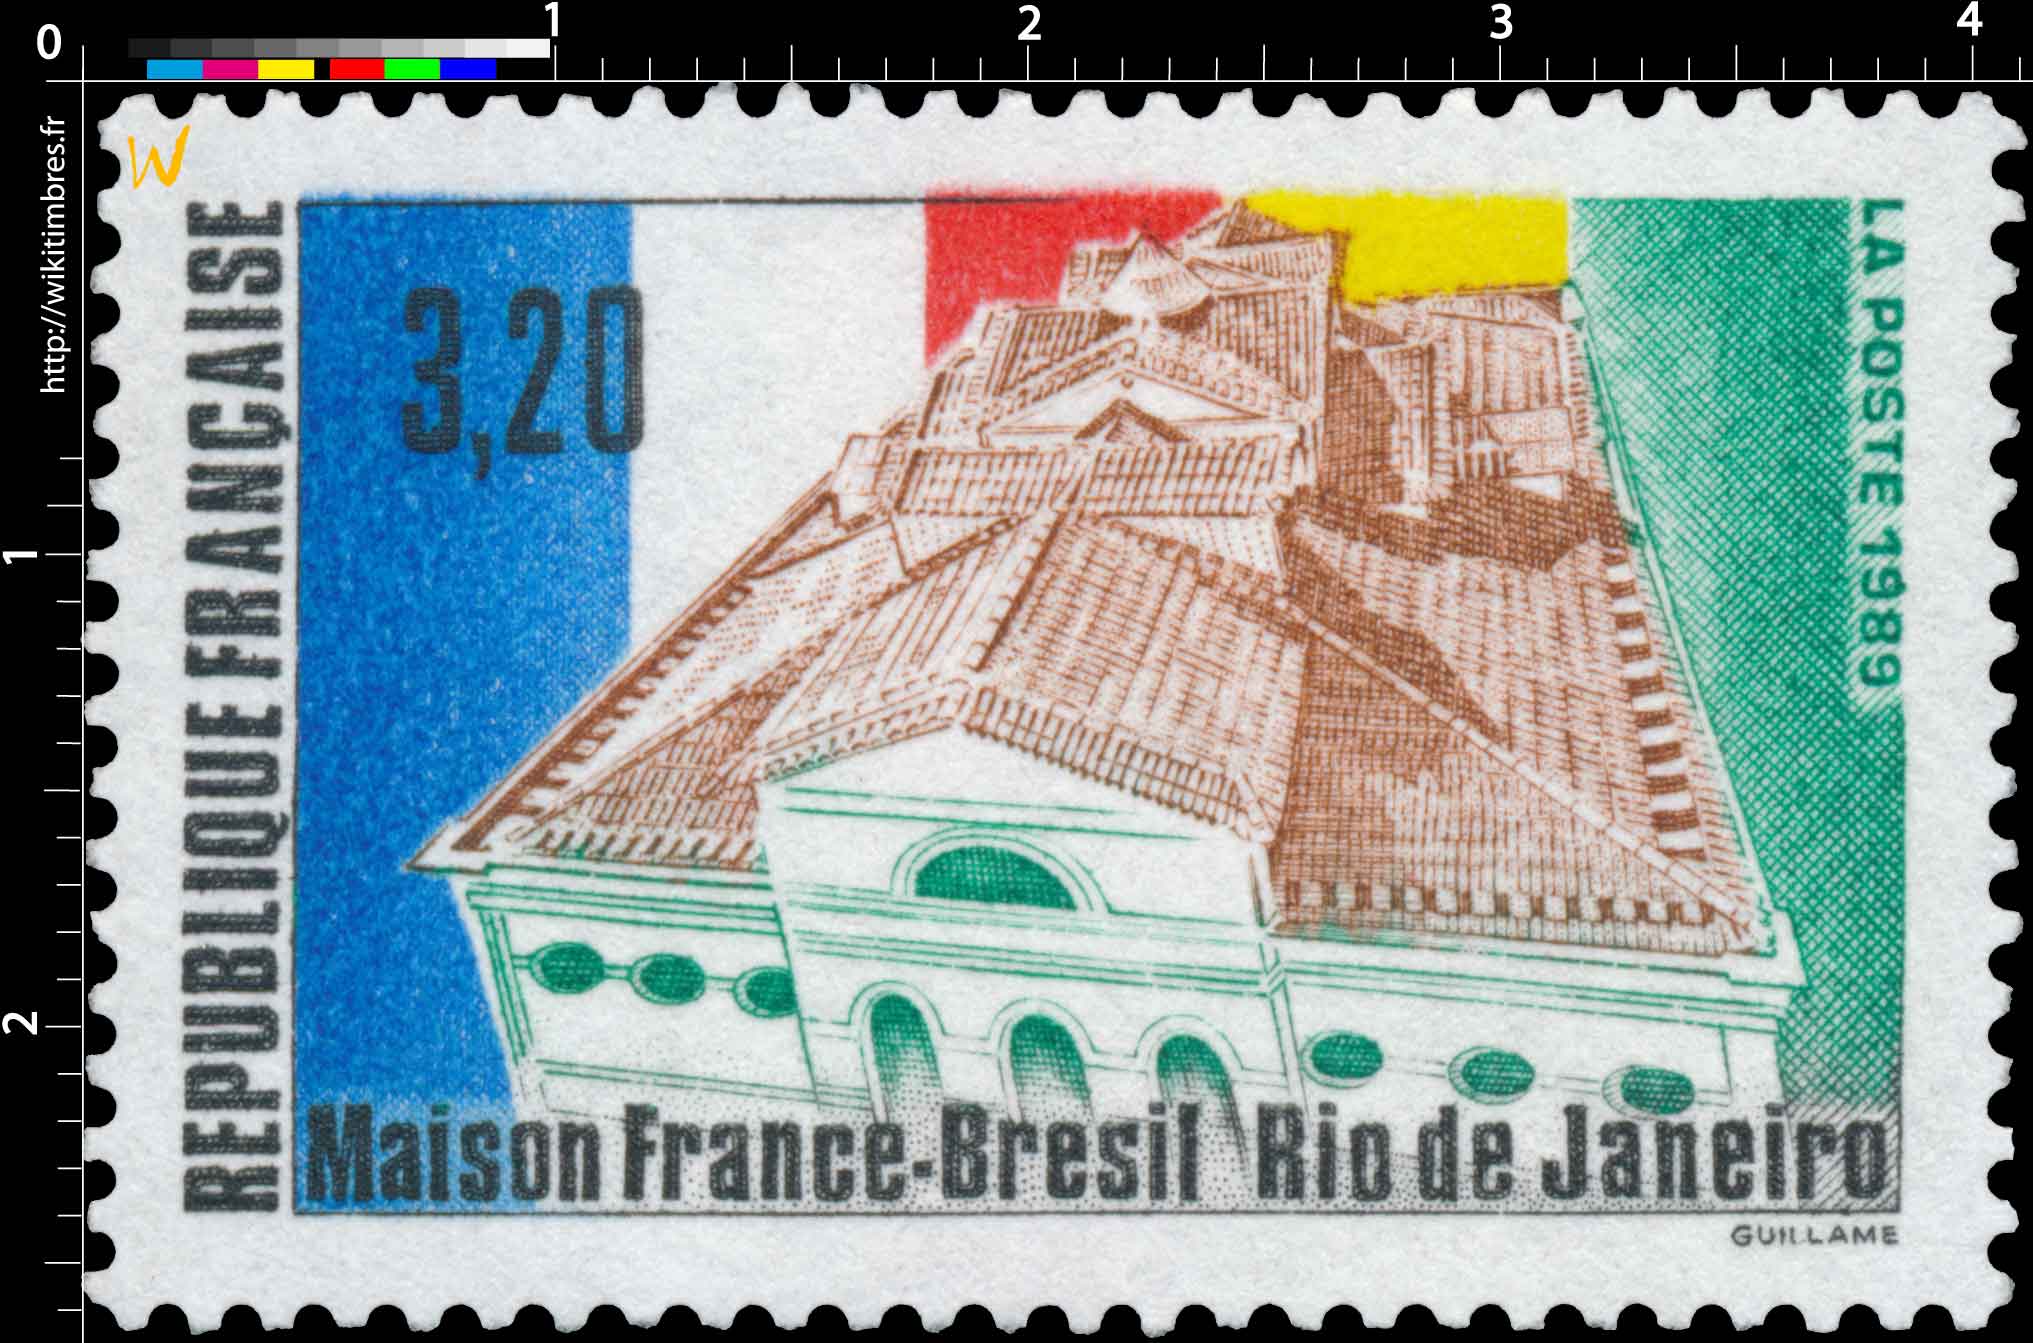 1989 Maison France-Brésil Rio de Janeiro